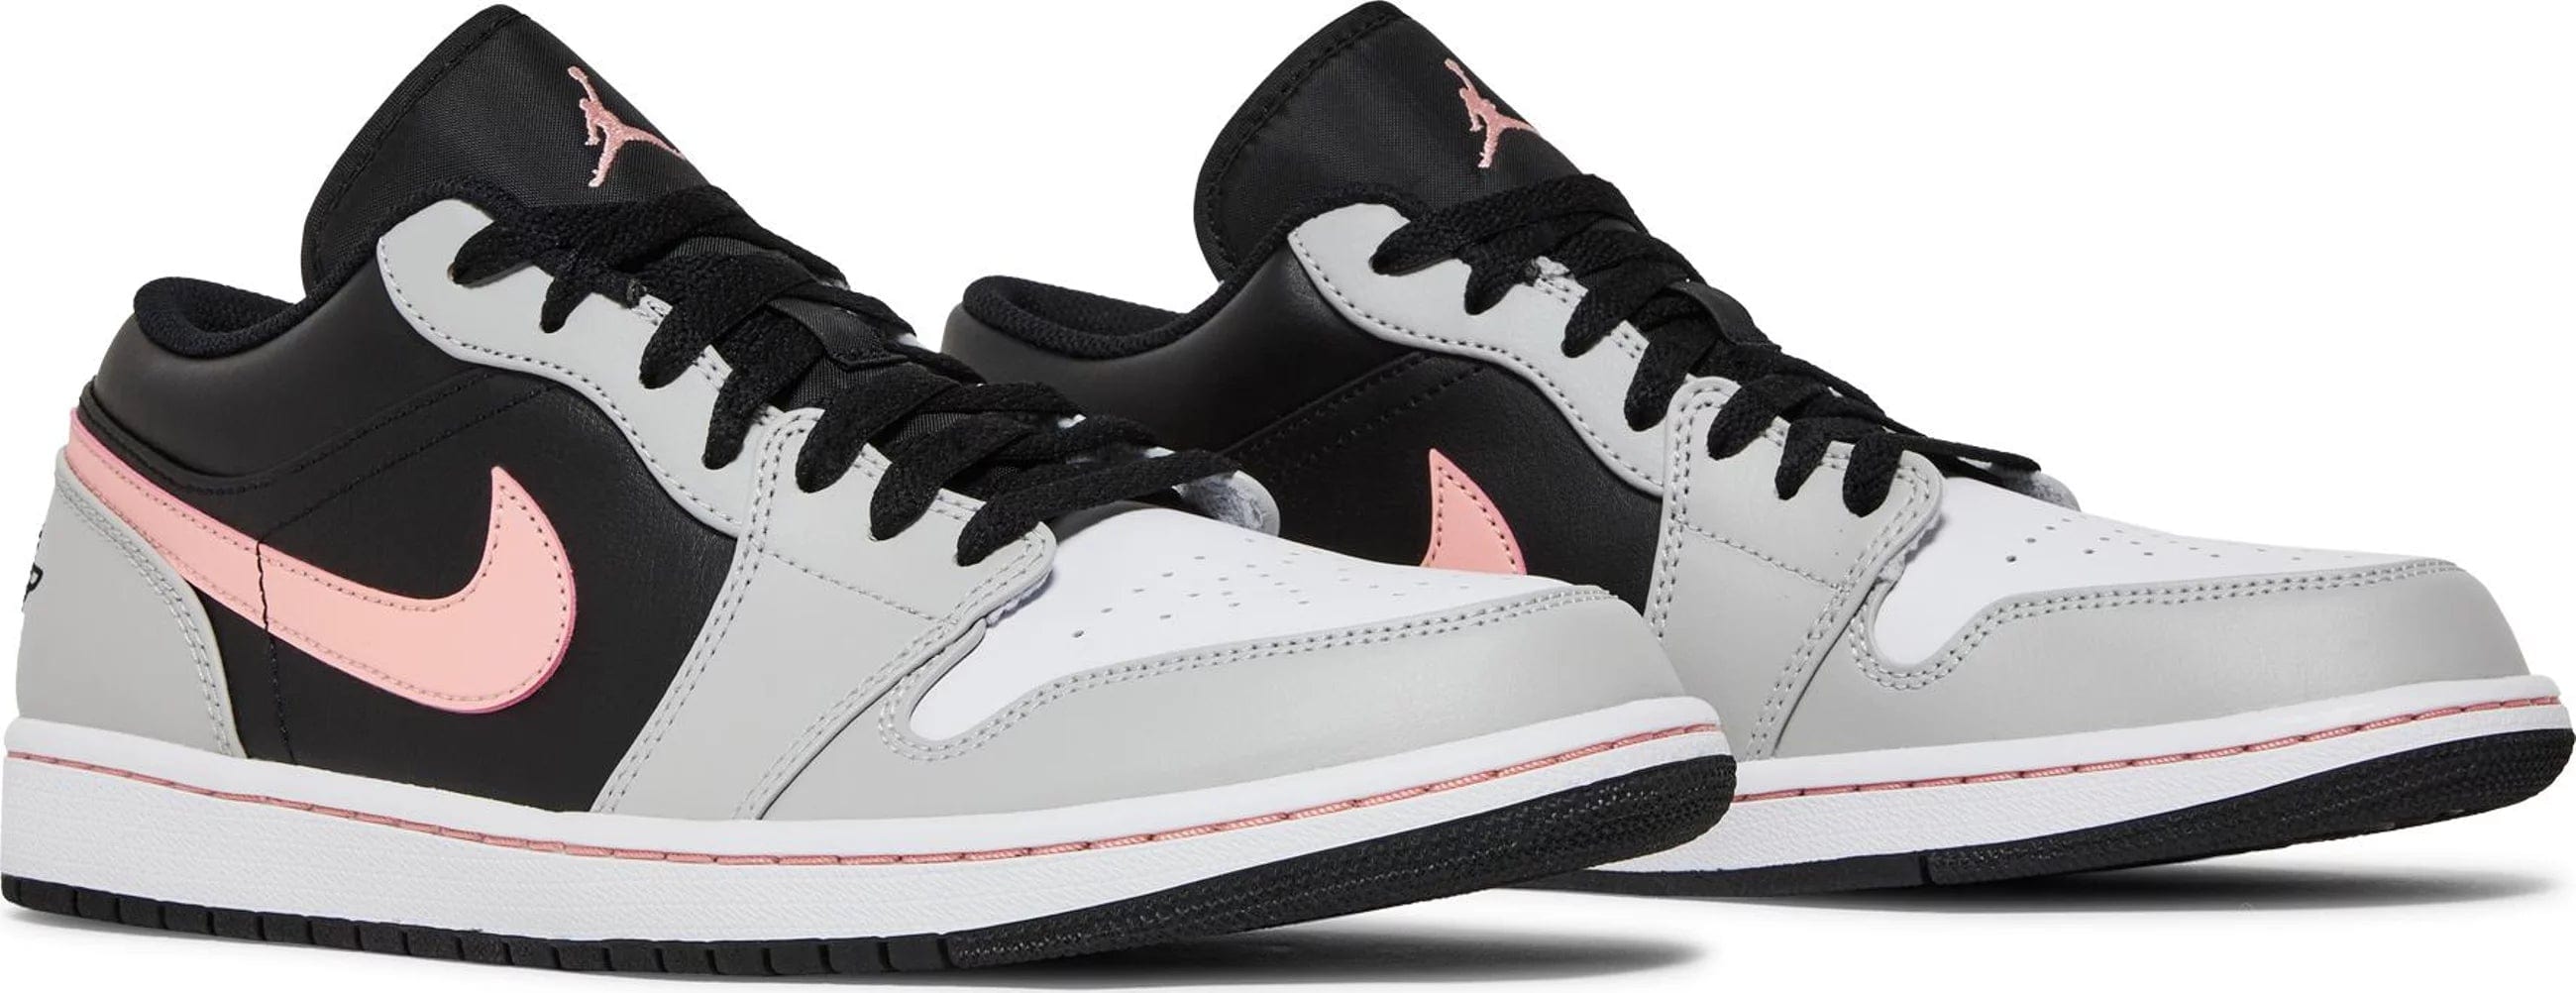 Nike Air Jordan 1 Low Black Grey Pink Men's